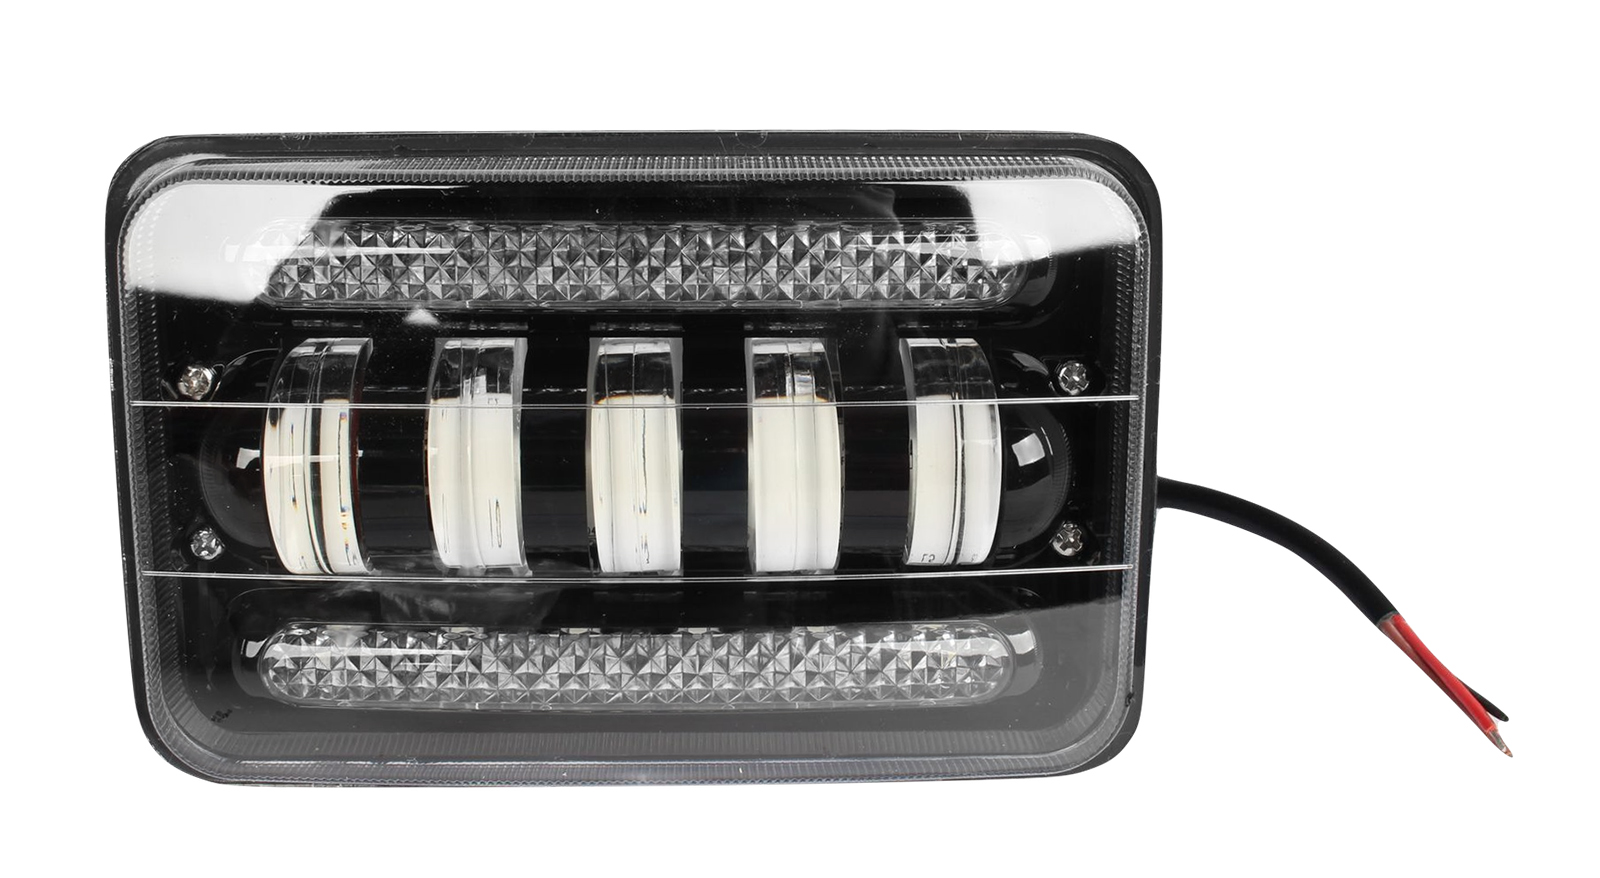 Фара рабочего света MISTAR MIS-50W 10-30V квадратная 170х110 мм с подсветкой диодная 1шт. фотография №1